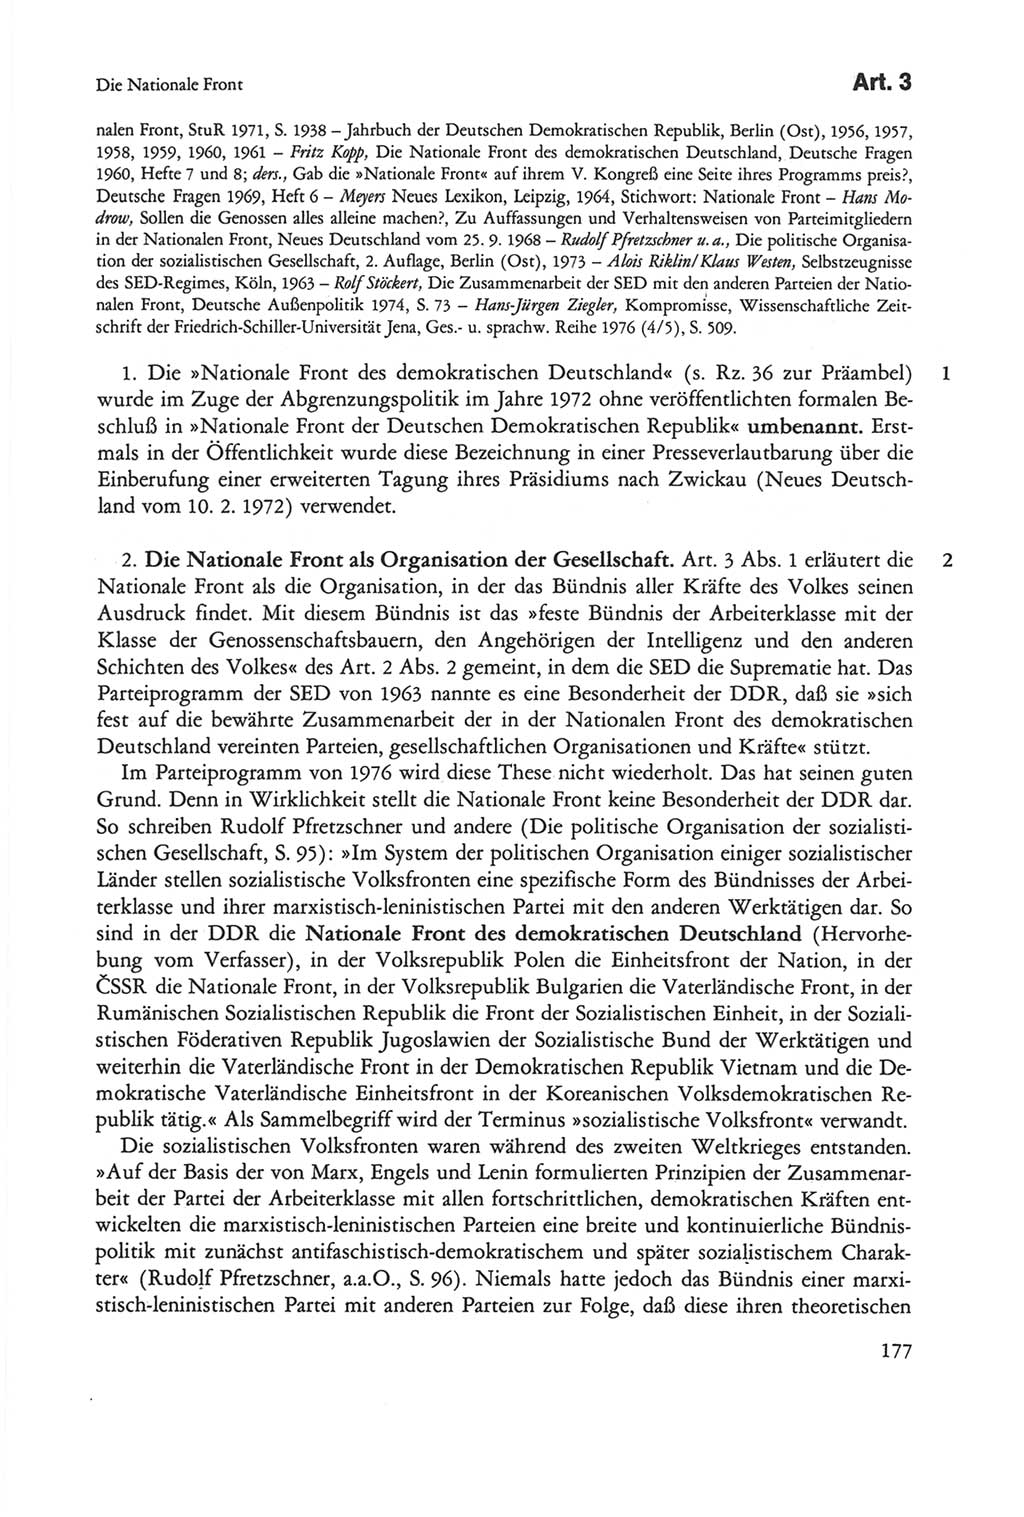 Die sozialistische Verfassung der Deutschen Demokratischen Republik (DDR), Kommentar mit einem Nachtrag 1997, Seite 177 (Soz. Verf. DDR Komm. Nachtr. 1997, S. 177)